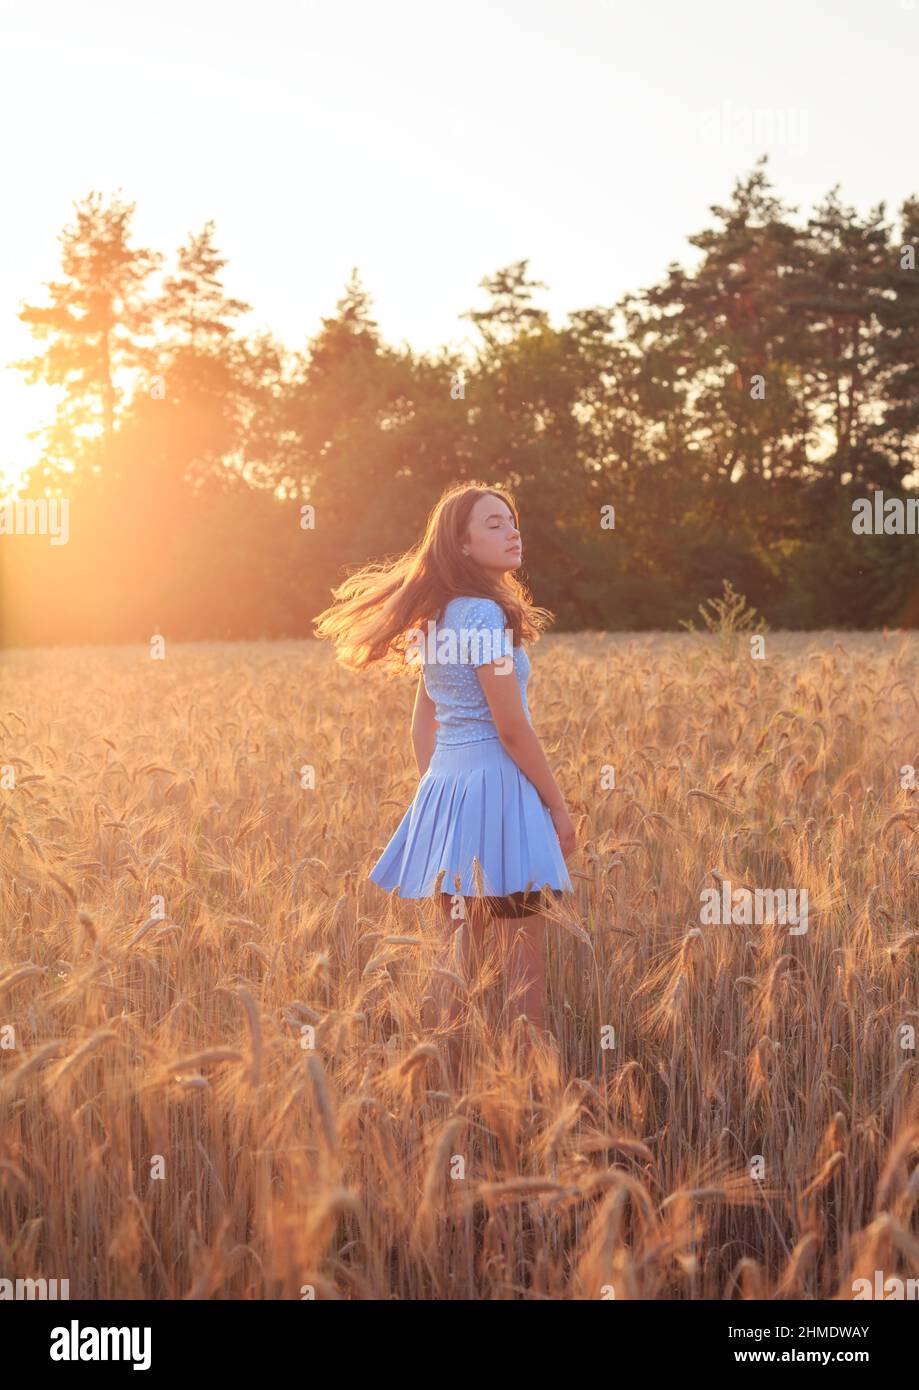 Happy teen girl lächelt auf Weizenfeld und berührt Ähren von Weizen mit der Hand. Schöner Teenager, der die Natur bei warmem Sonnenschein in einem Weizenfeld genießt Stockfoto